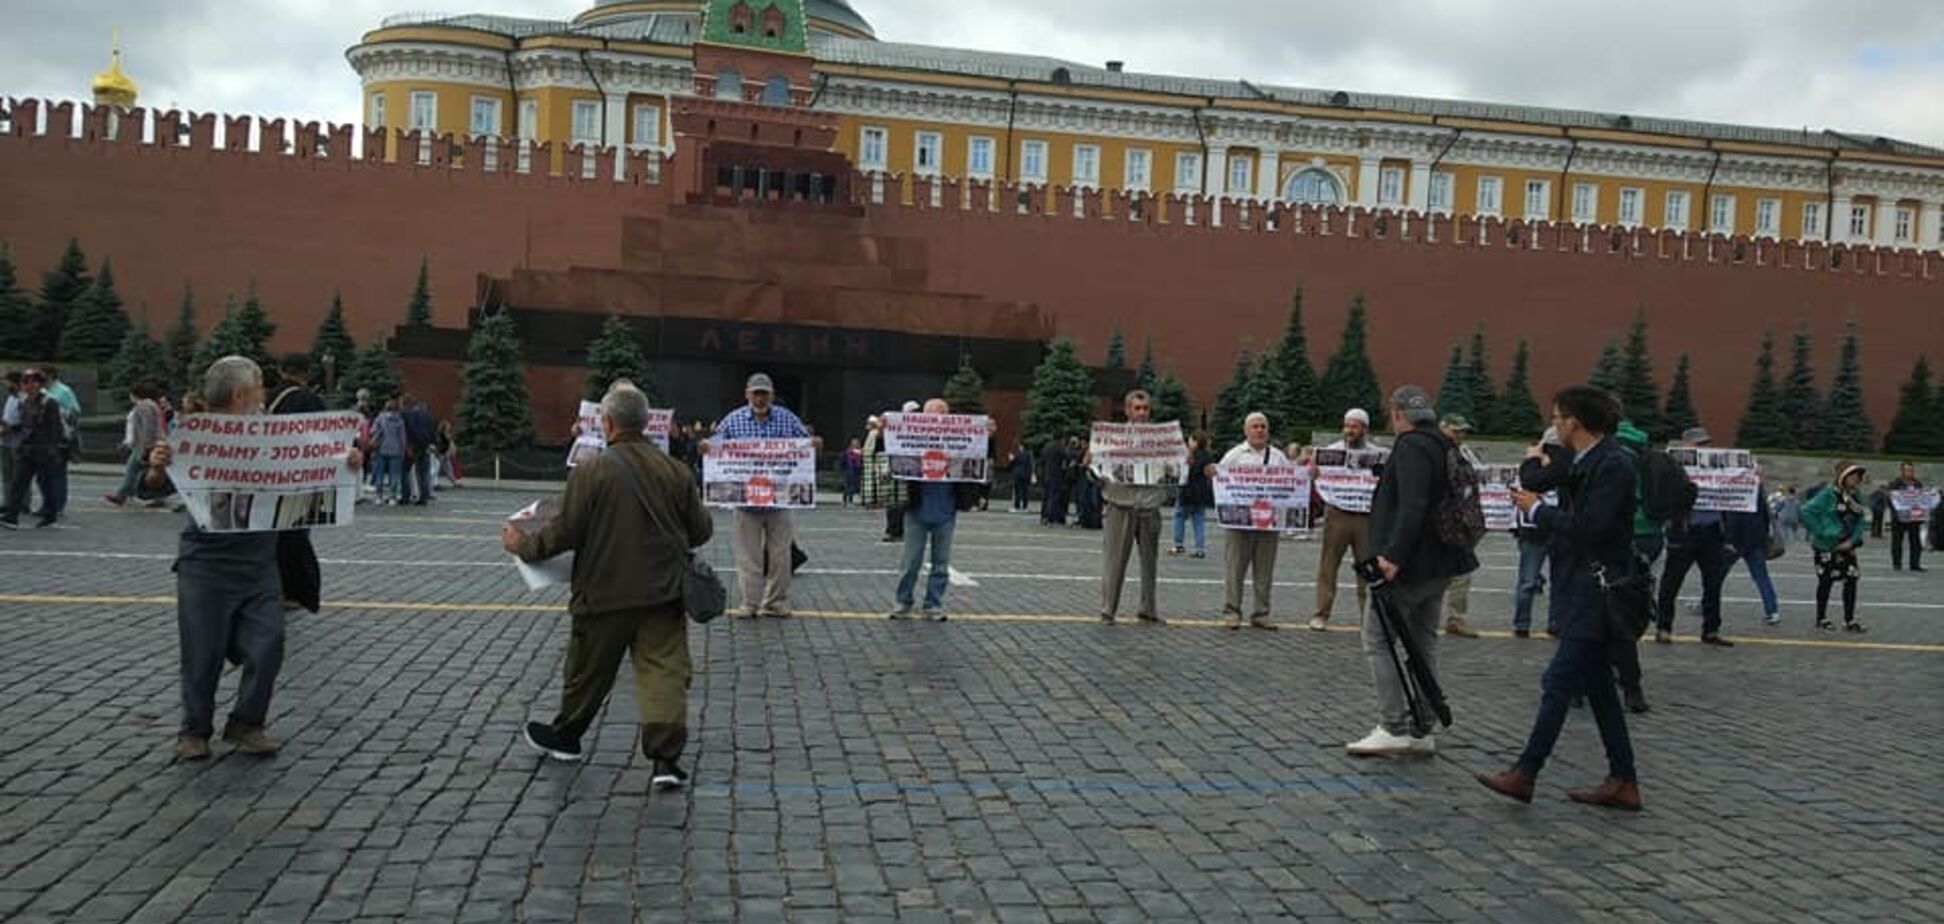 В Москве возле Кремля прошел митинг жителей Крыма: задержаны 7 человек